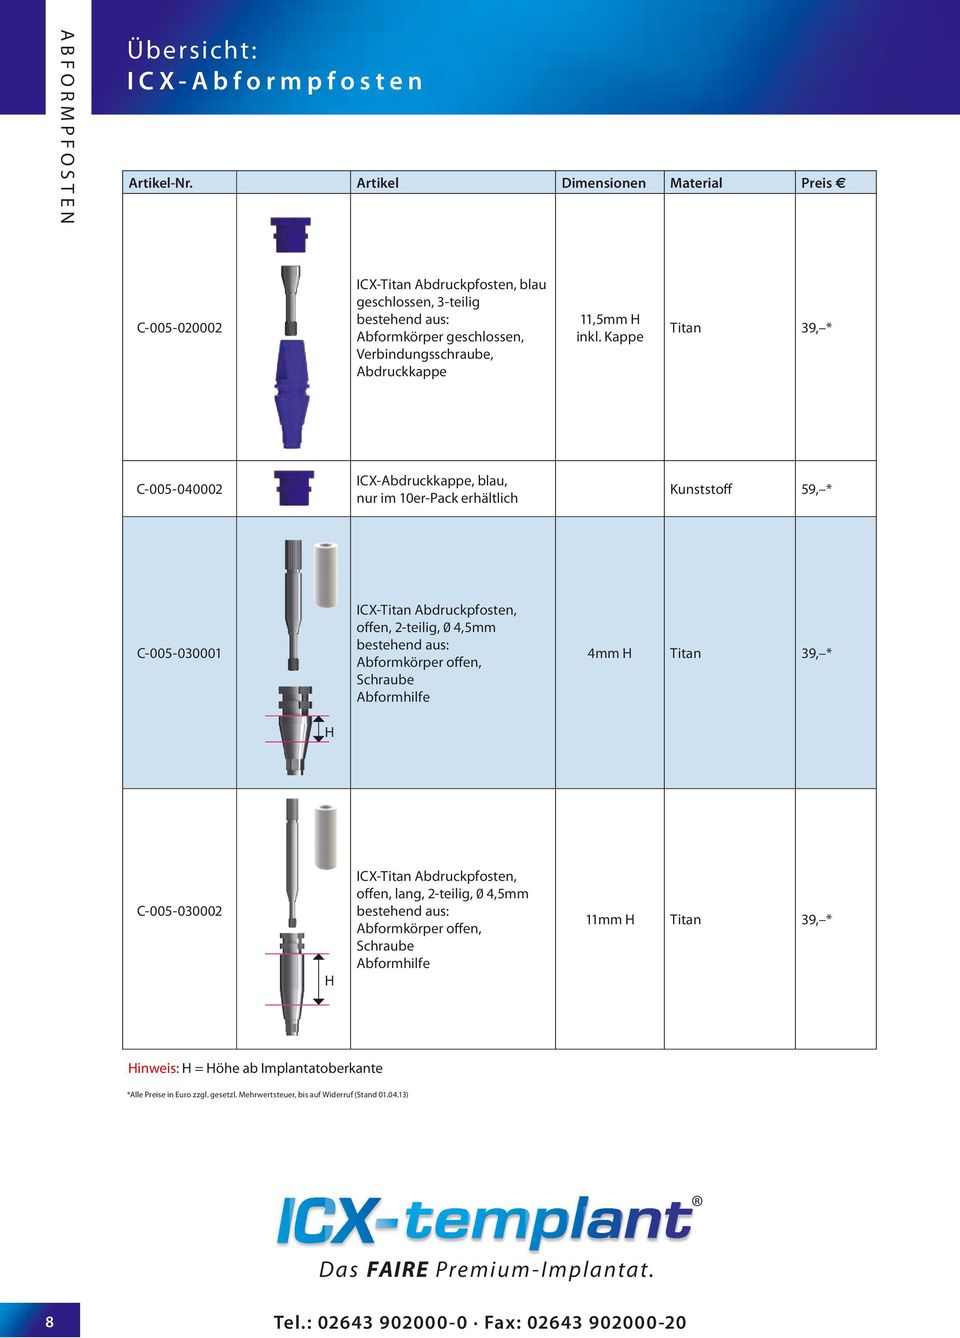 Kappe C-005-040002 ICX-Abdruckkappe, blau, nur im 10er-Pack erhältlich Kunststoff 59, * C-005-030001 ICX- Abdruckpfosten, offen, 2-teilig, 0 4,5mm bestehend aus: